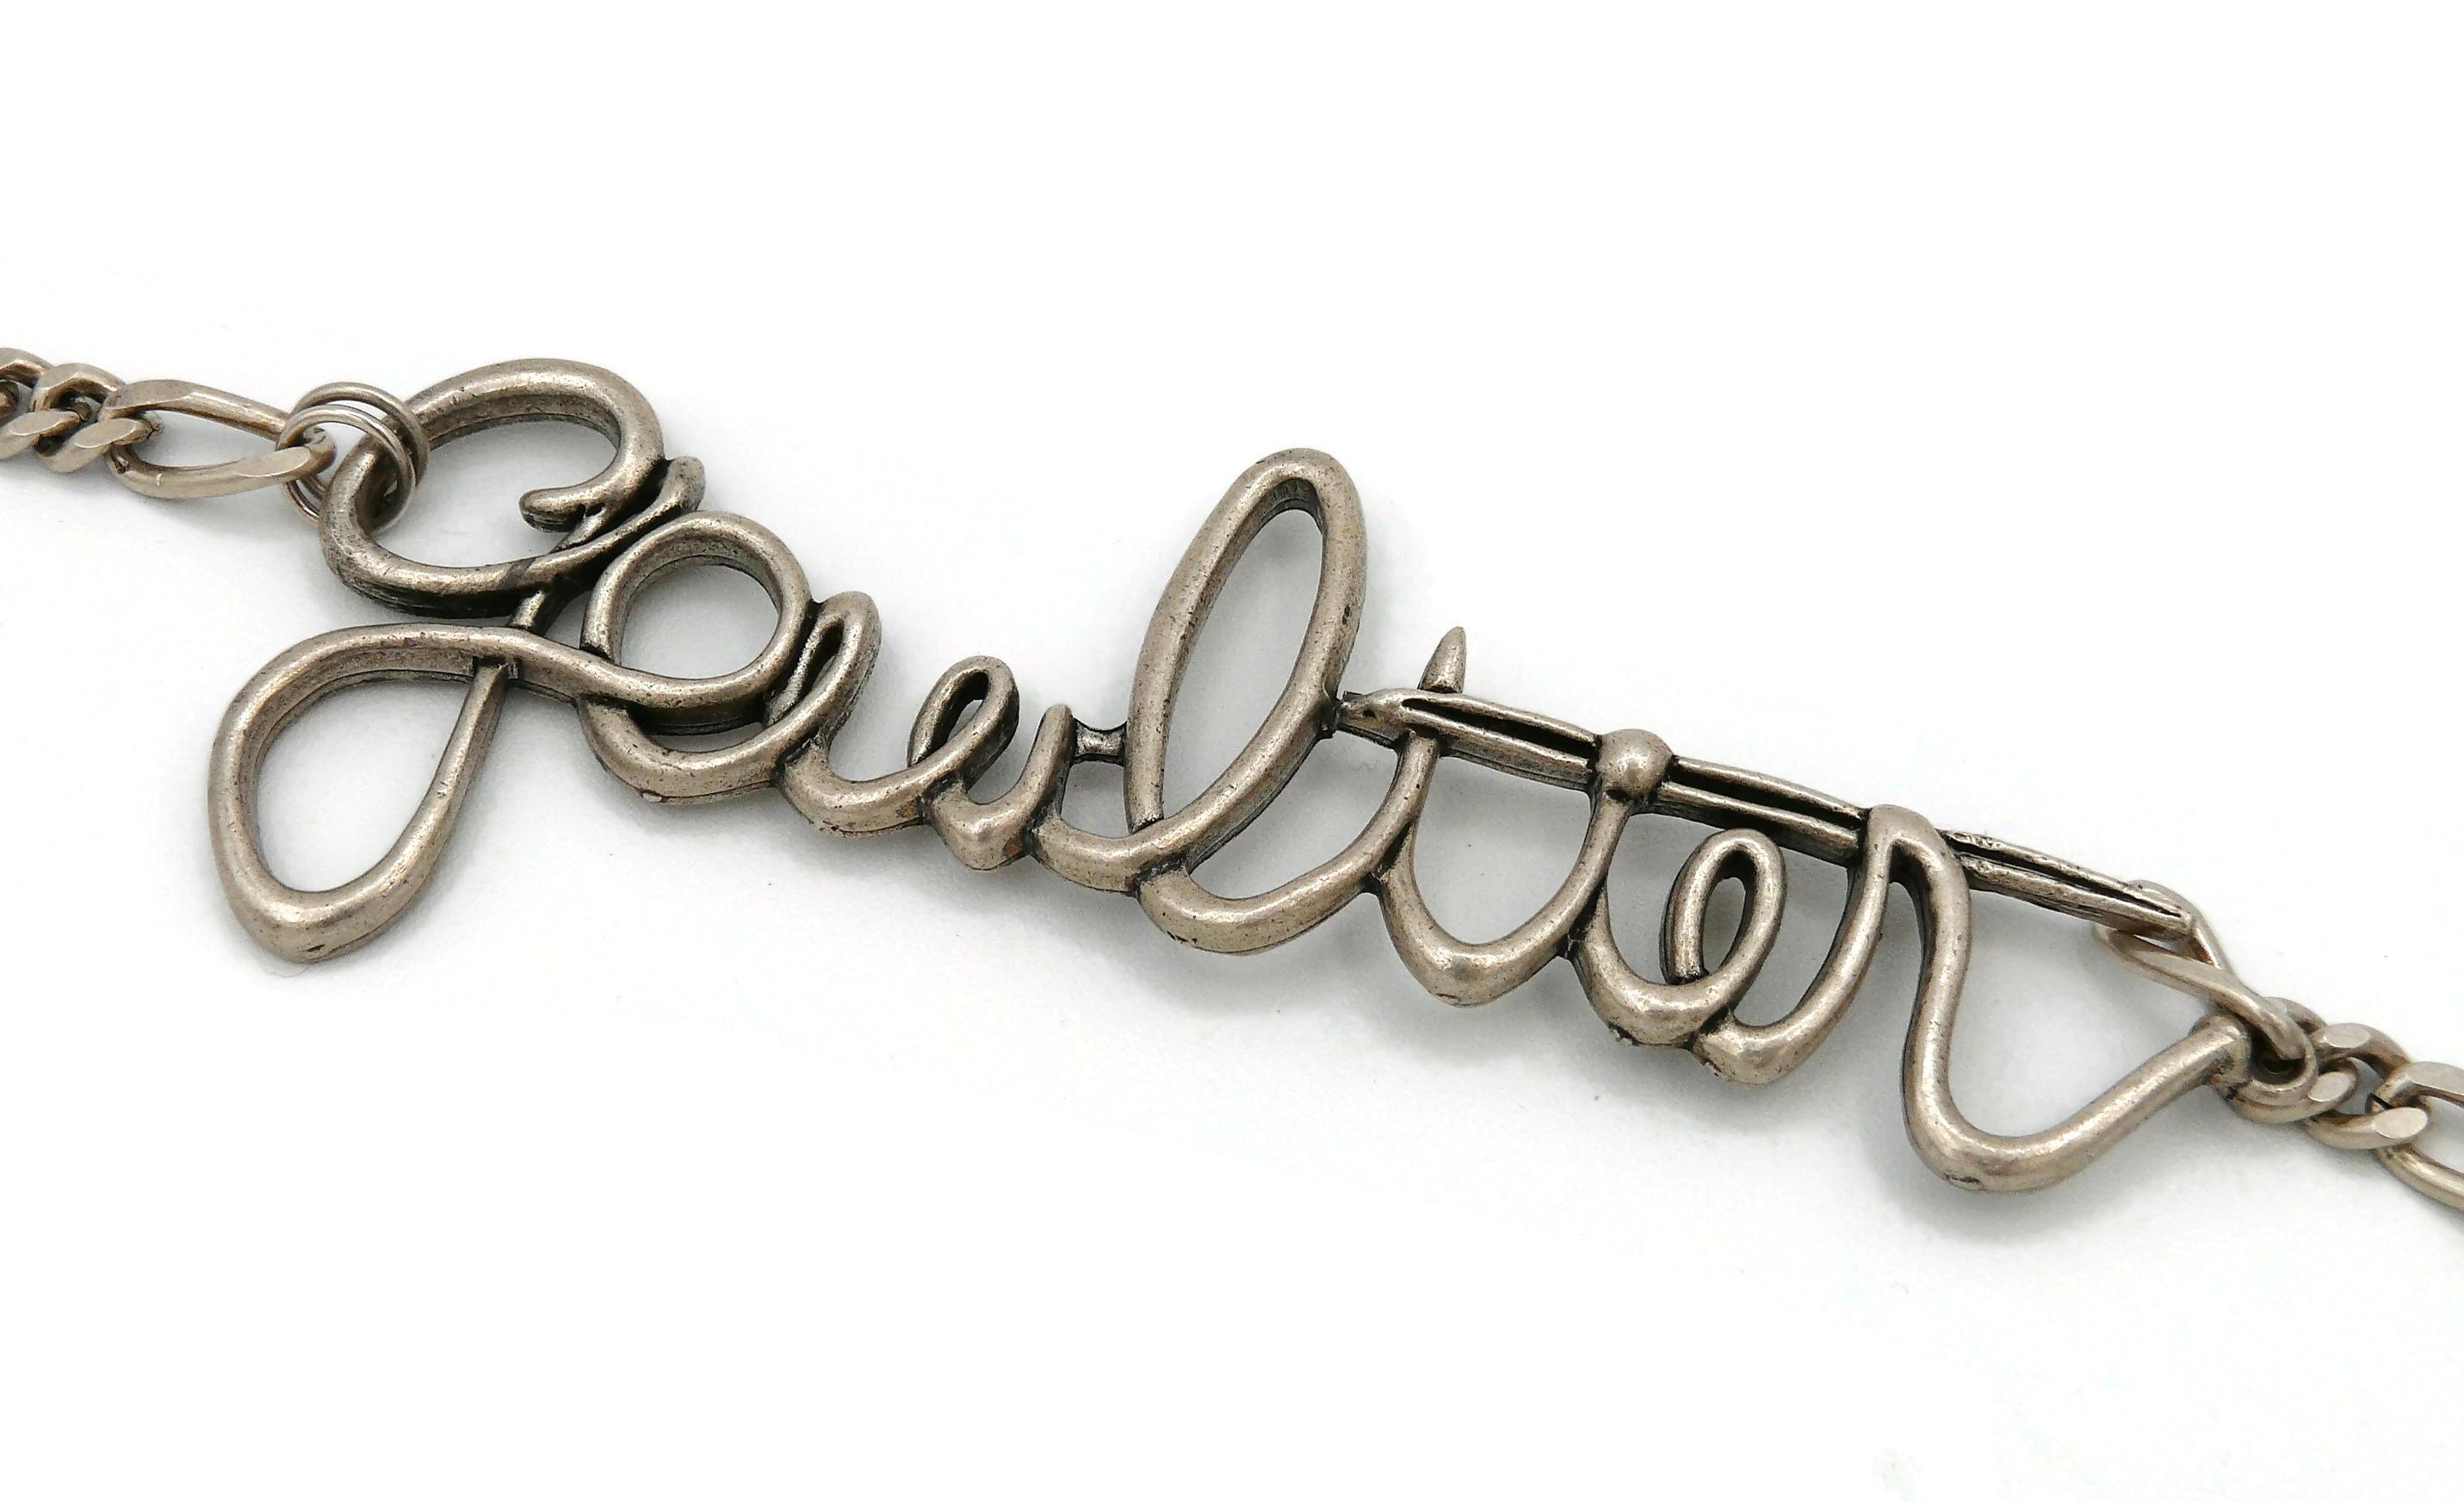 Jean Paul Gaultier Cursive Signature Necklace For Sale 2